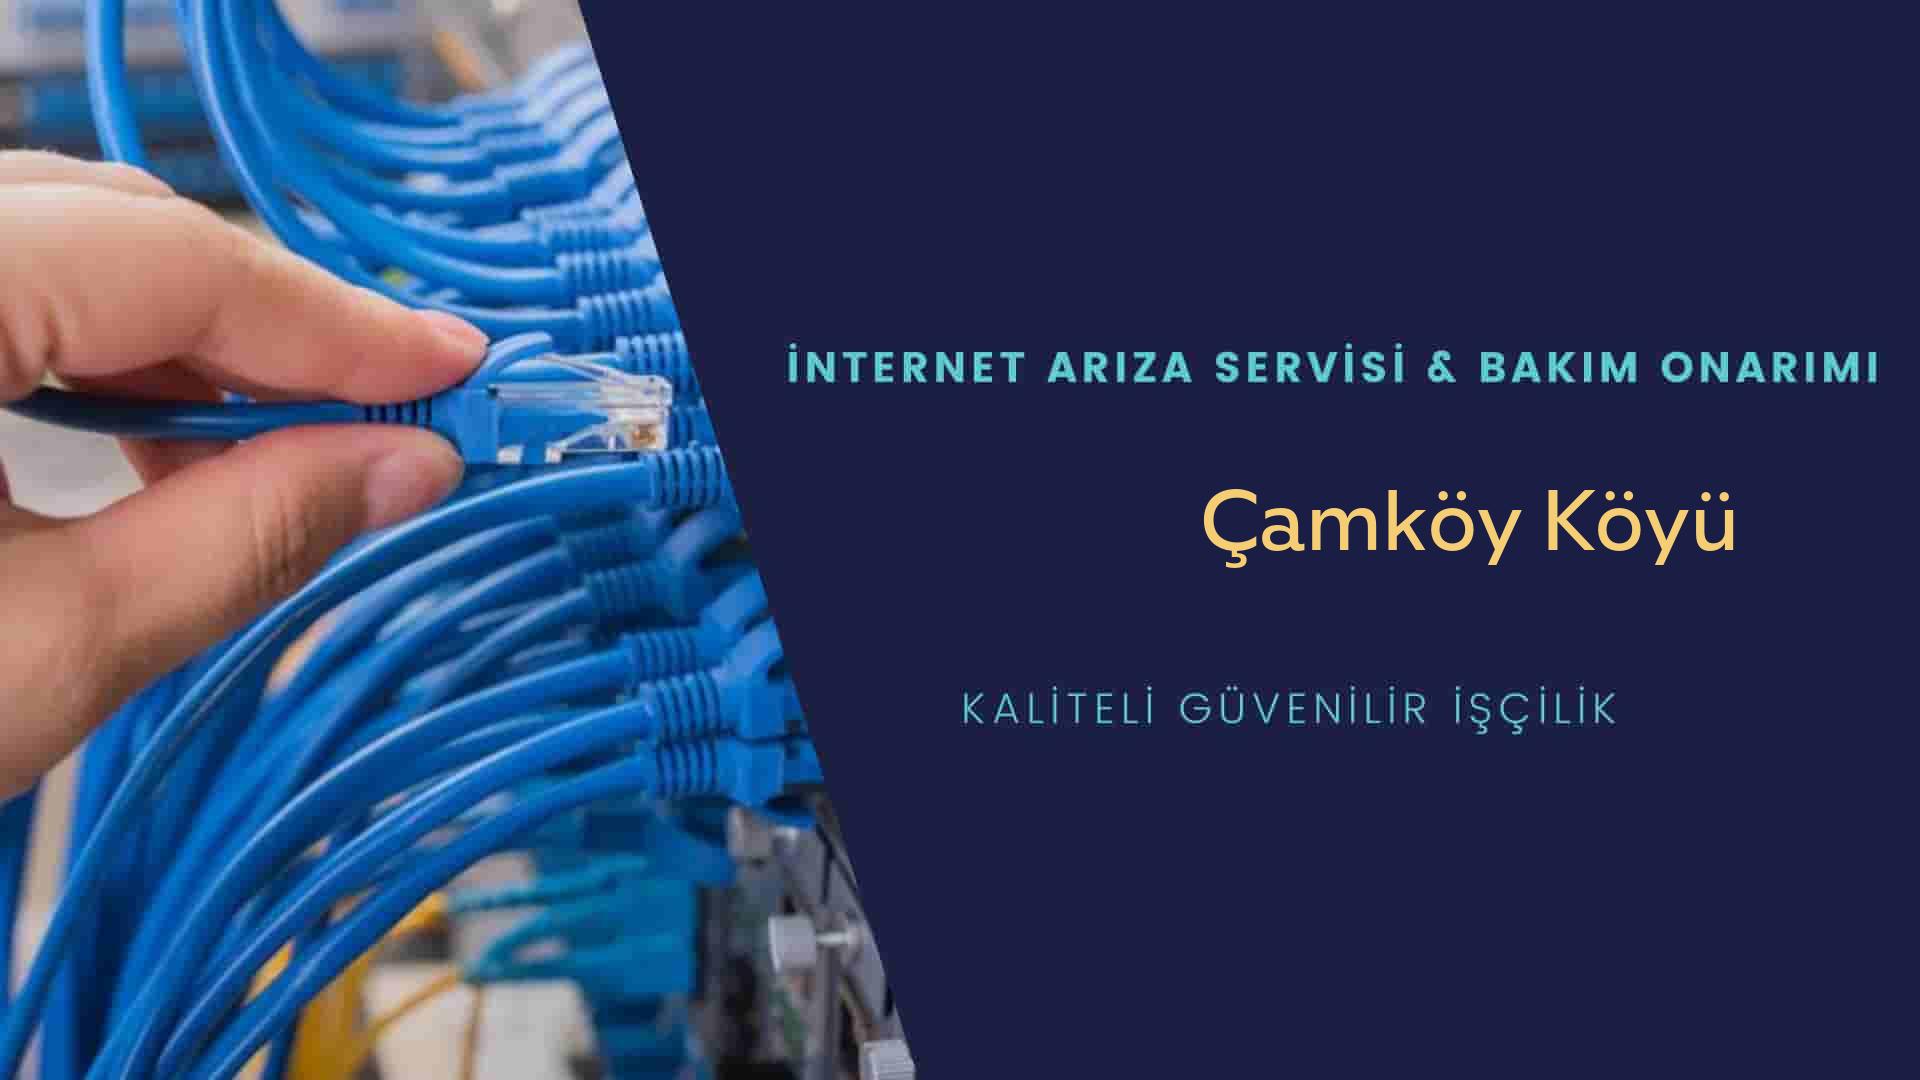 Çamköy Köyü internet kablosu çekimi yapan yerler veya elektrikçiler mi? arıyorsunuz doğru yerdesiniz o zaman sizlere 7/24 yardımcı olacak profesyonel ustalarımız bir telefon kadar yakındır size.